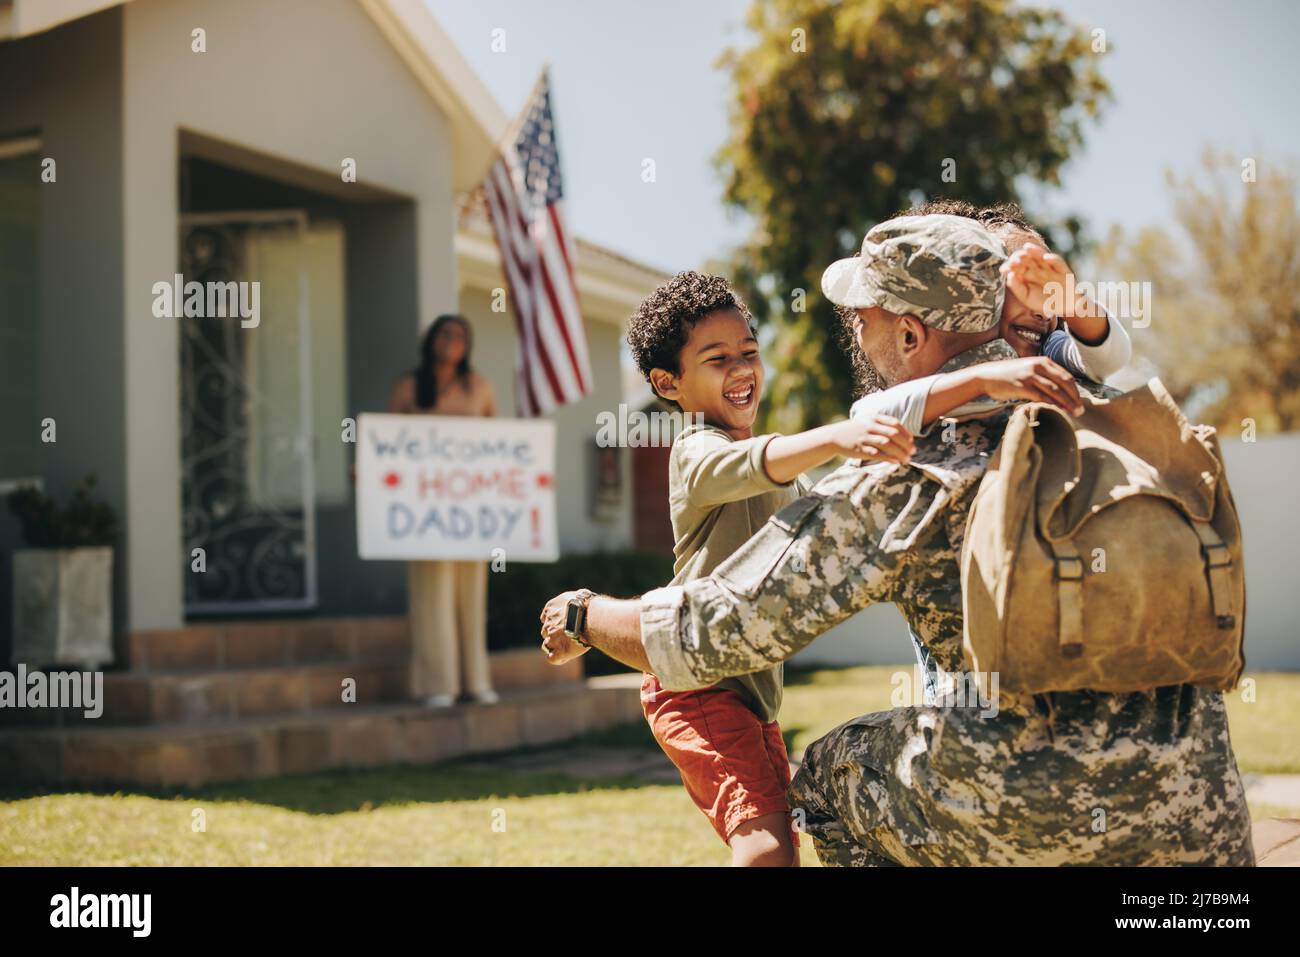 Militärvater, der sich zu Hause mit seiner Familie wiedervereinigt. Amerikanischer Soldat umarmte seine Kinder, nachdem er von der Armee nach Hause zurückgekehrt war. Militärangehöriger erhält ein w Stockfoto